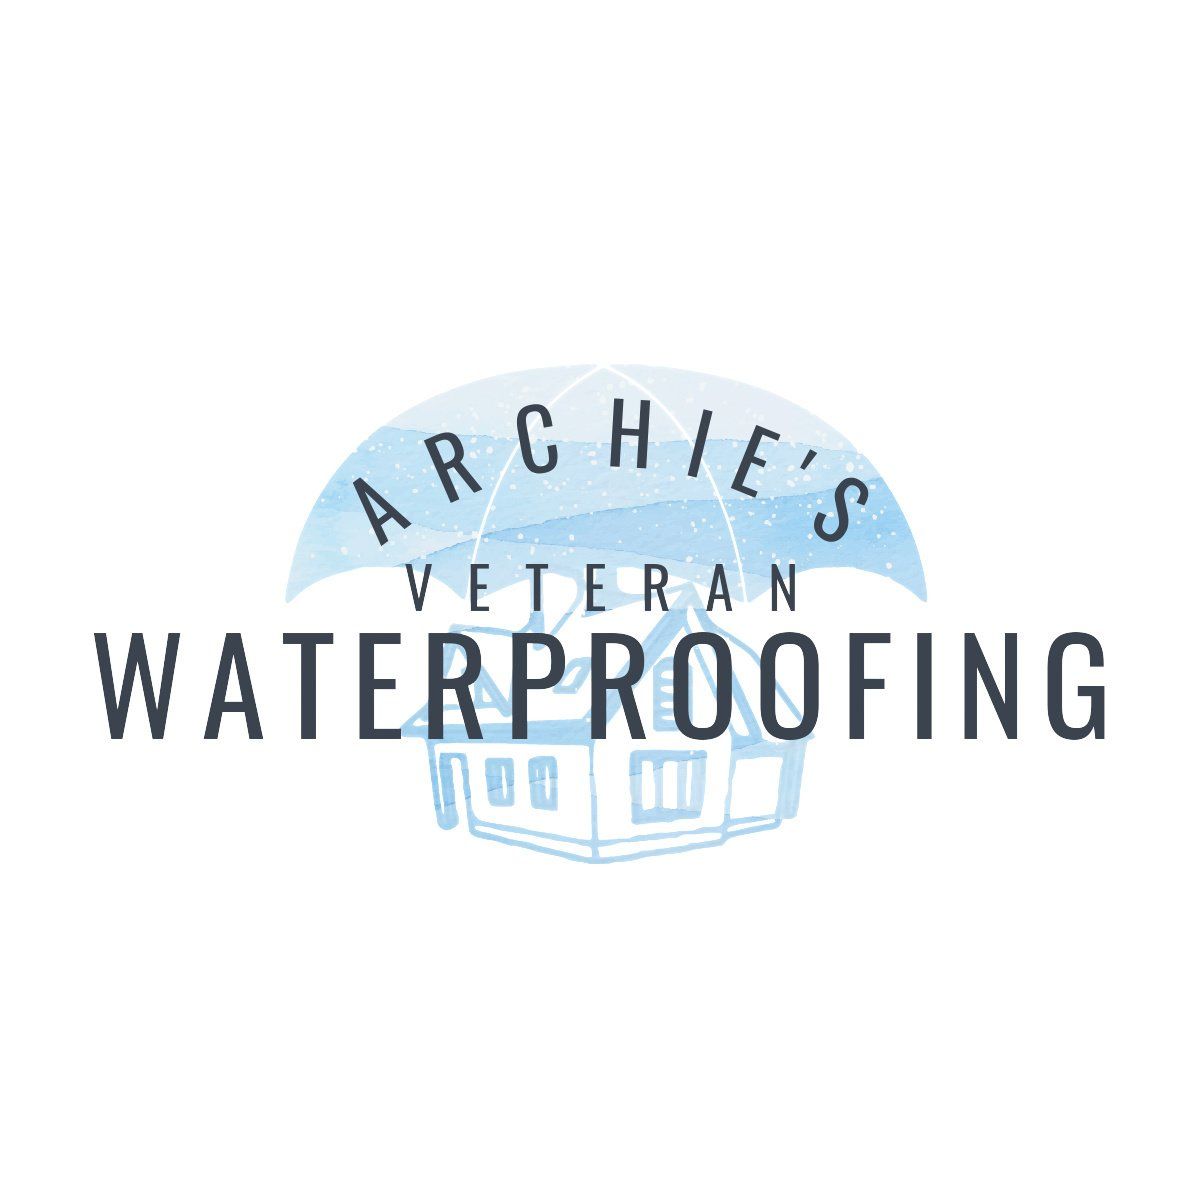 Archie's Veteran Waterproofing